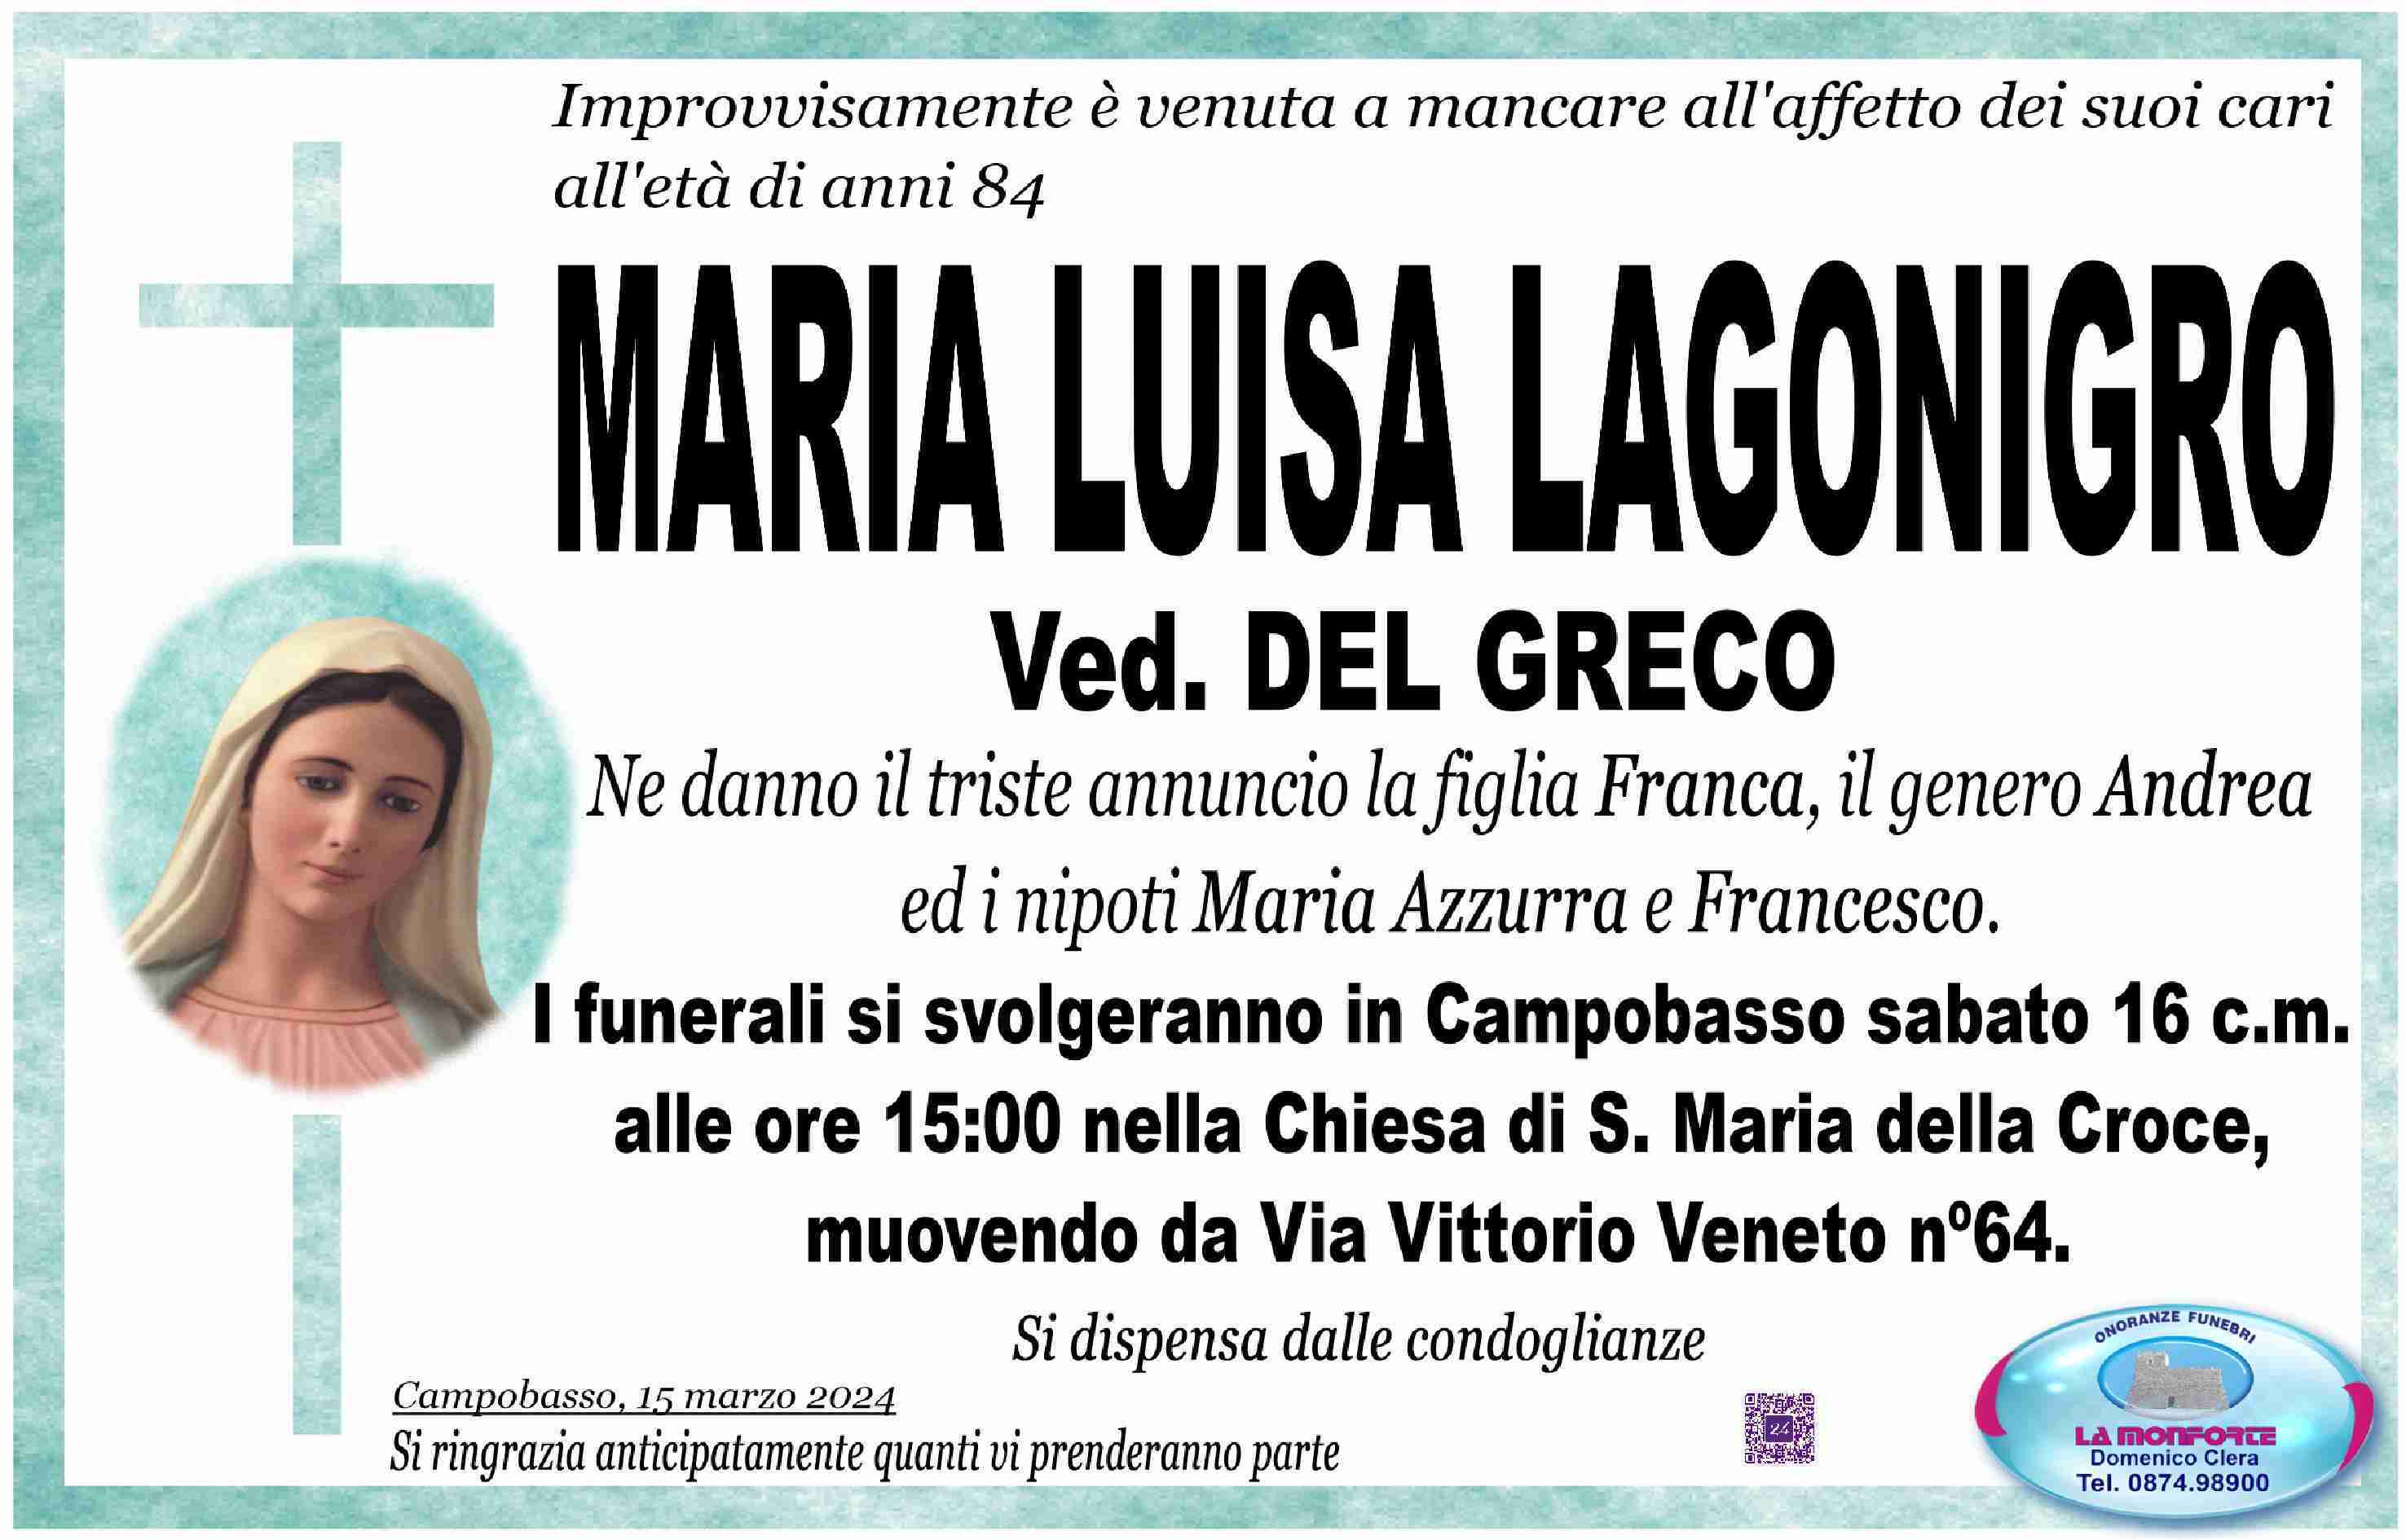 Maria Luisa Lagonigro